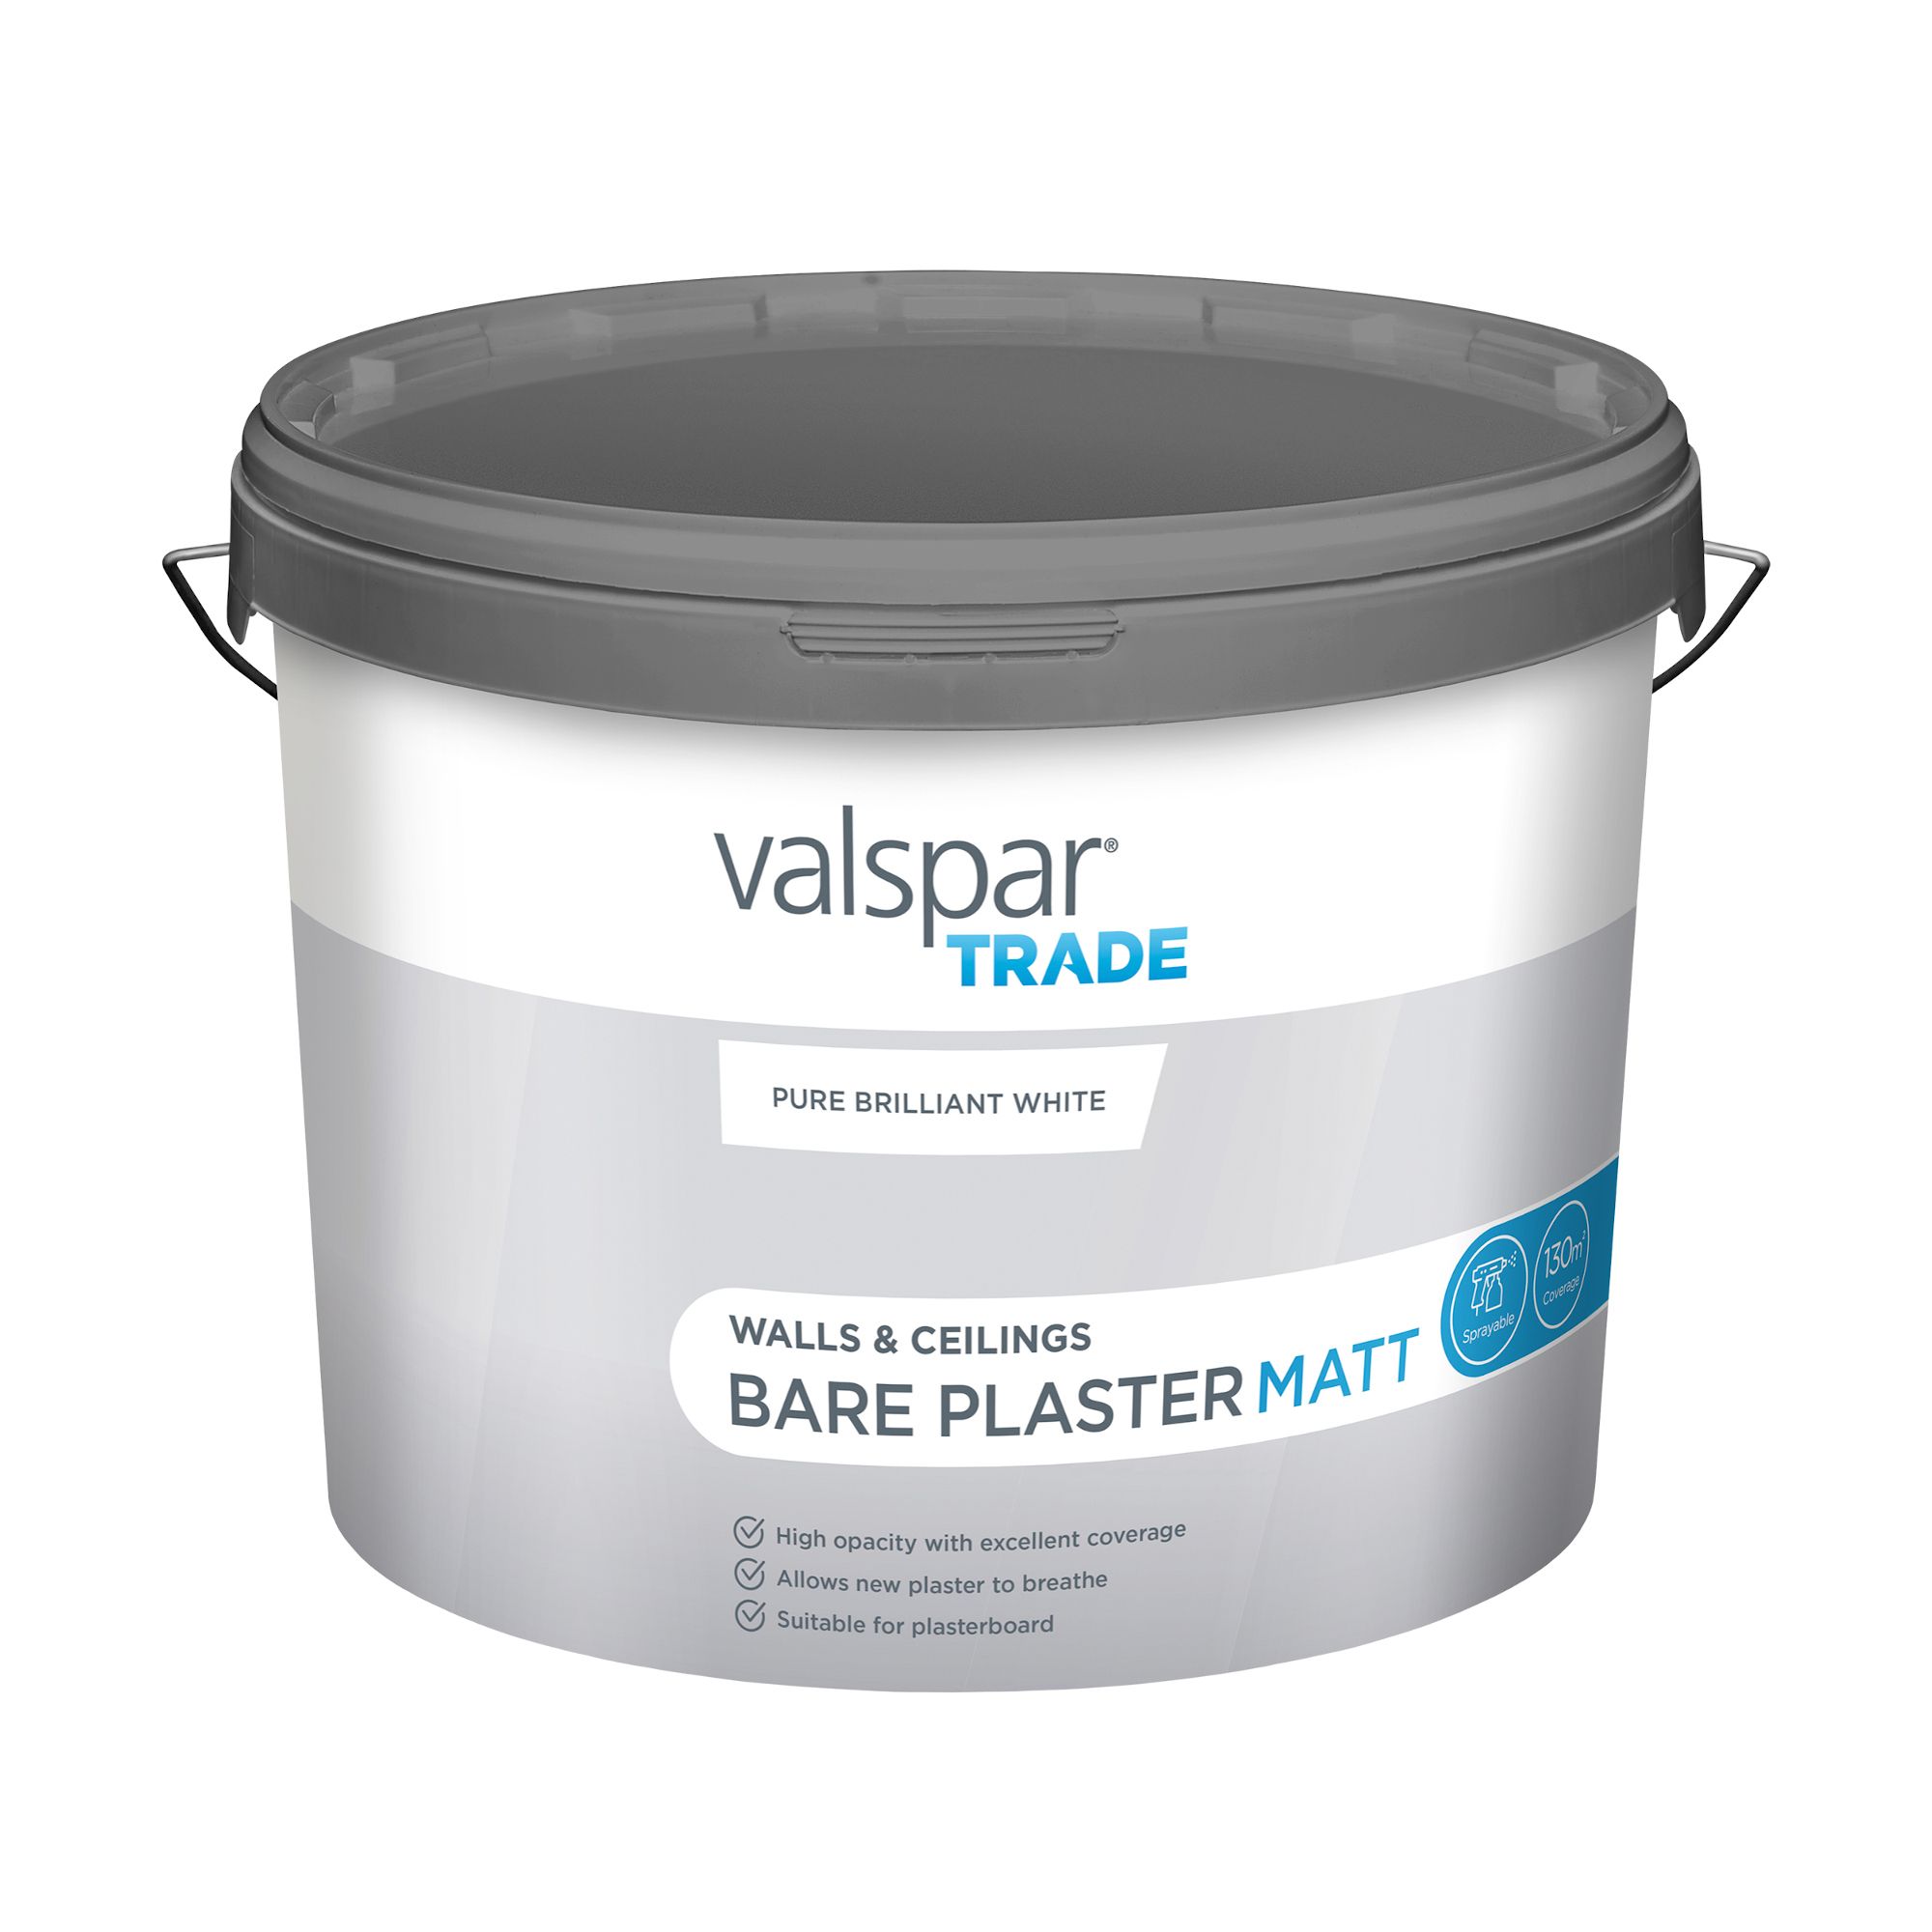 Valspar Trade Pure Brilliant White Matt Bare plaster paint, 10L